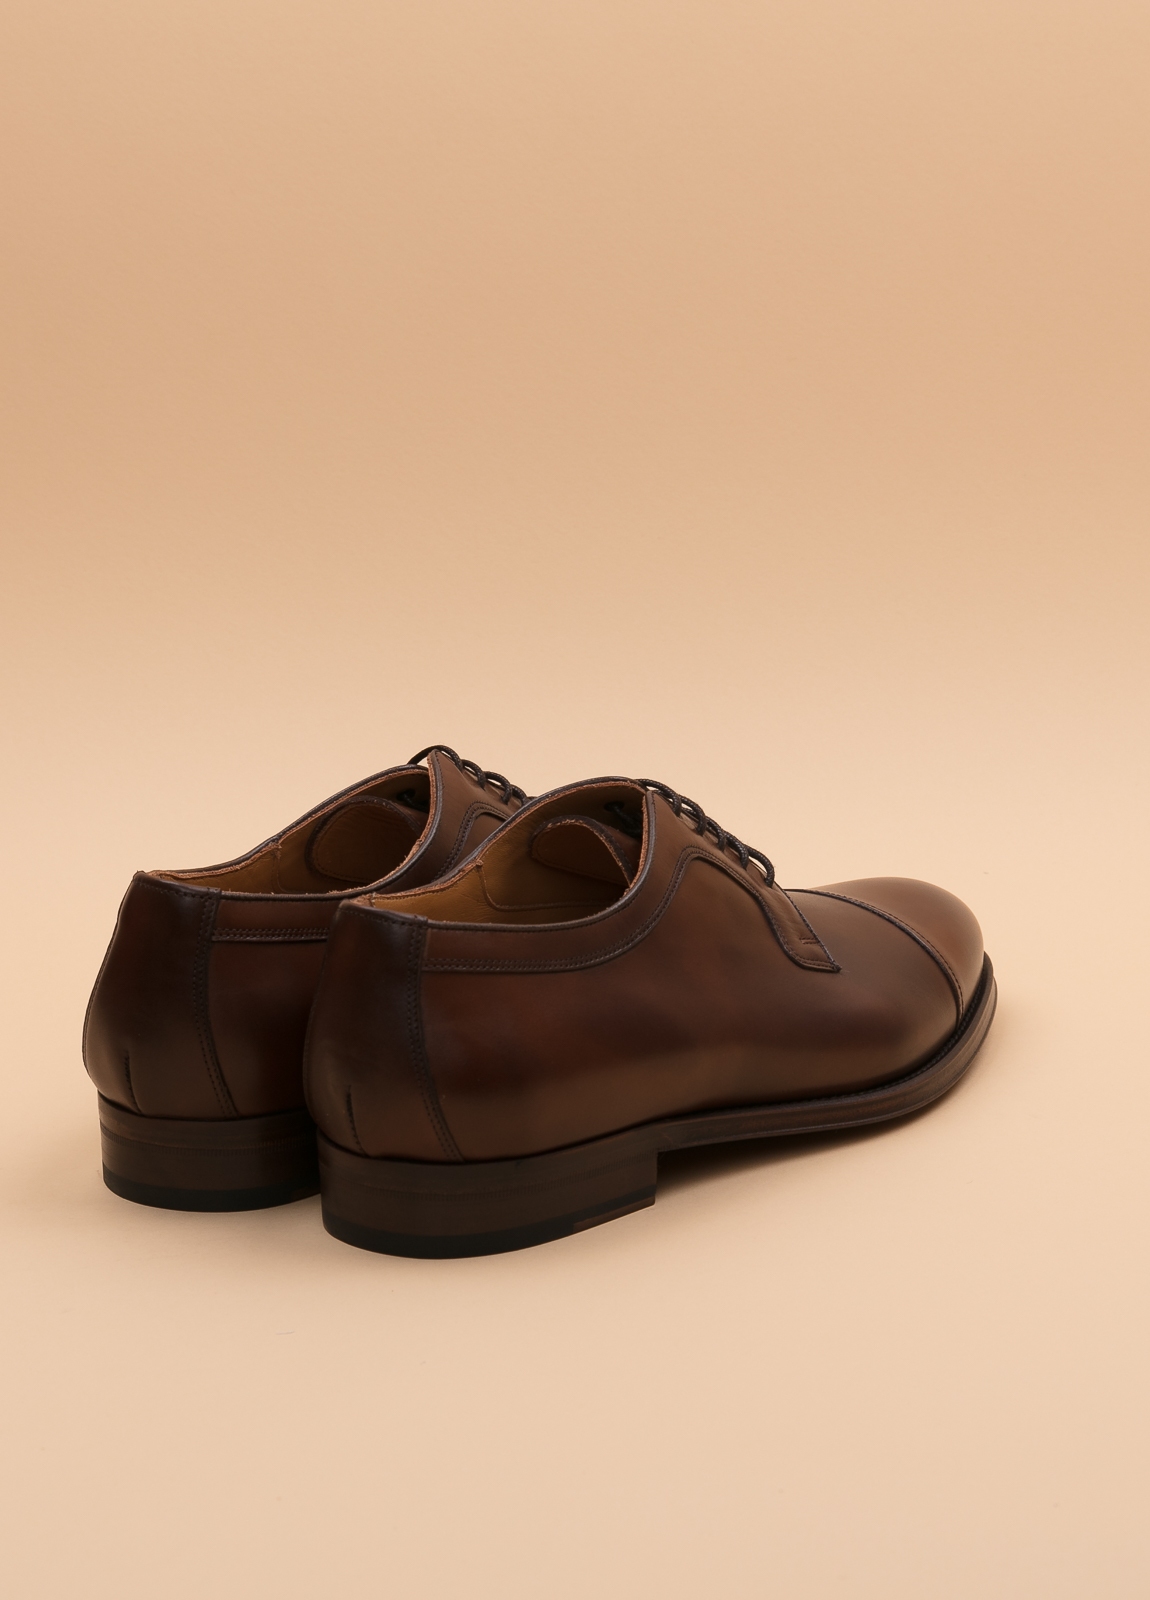 Zapato Formal Wear FUREST COLECCIÓN marrón - Ítem1